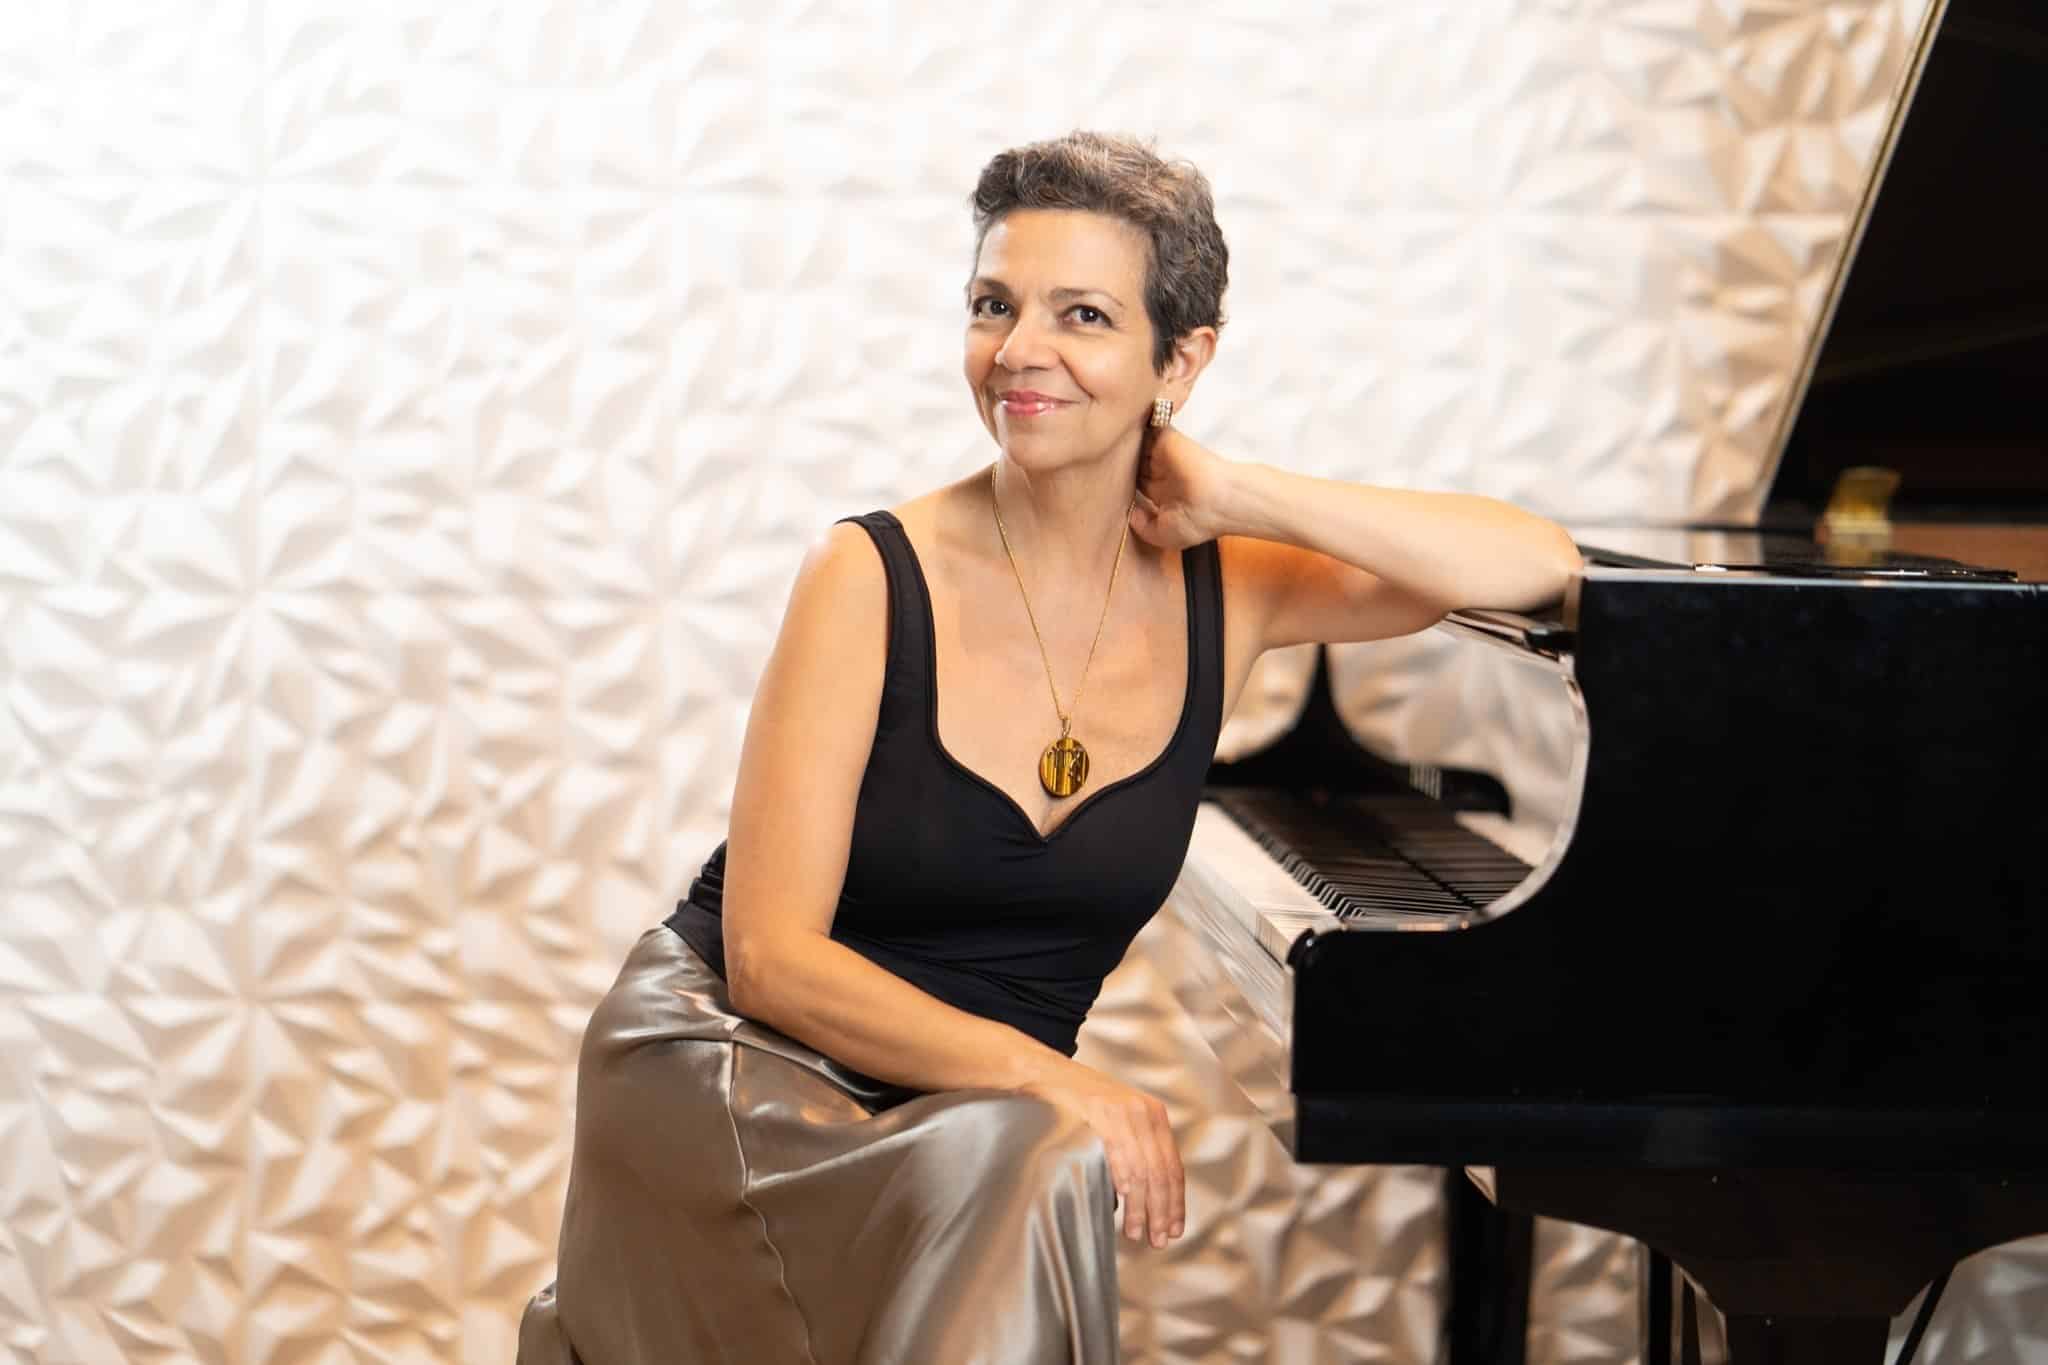 revistaprosaversoearte.com - A pianista Maria Teresa Madeira se apresenta na Casa do Choro, homenagem a Chiquinha Gonzaga